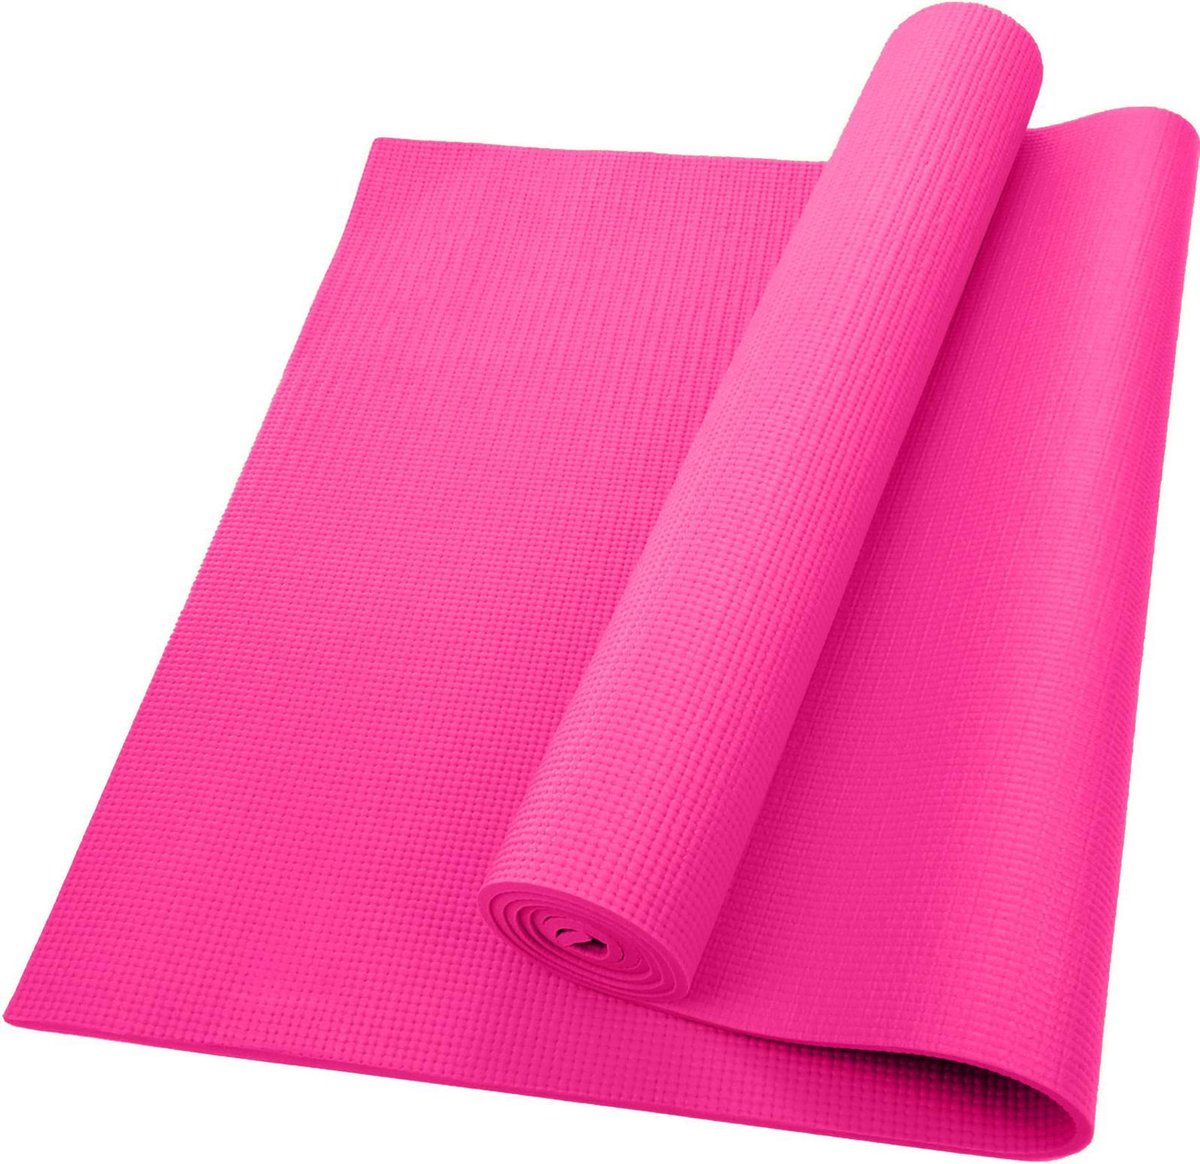 Yogamat - Roze - 180x60x0,4 cm